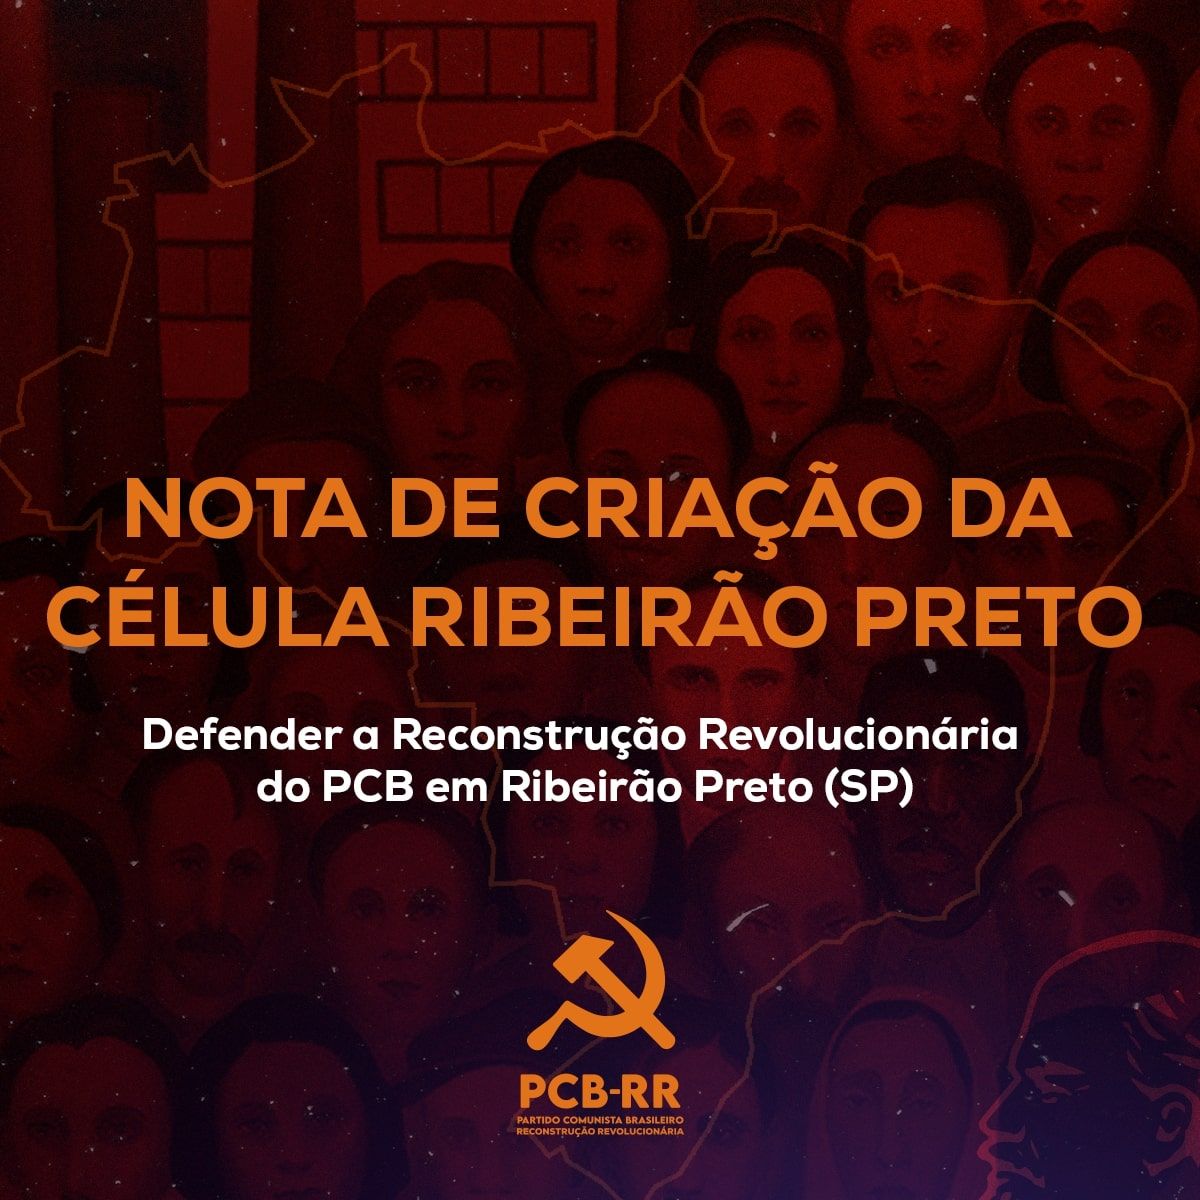 Ribeirão Preto (SP): defender a Reconstrução Revolucionária do PCB!